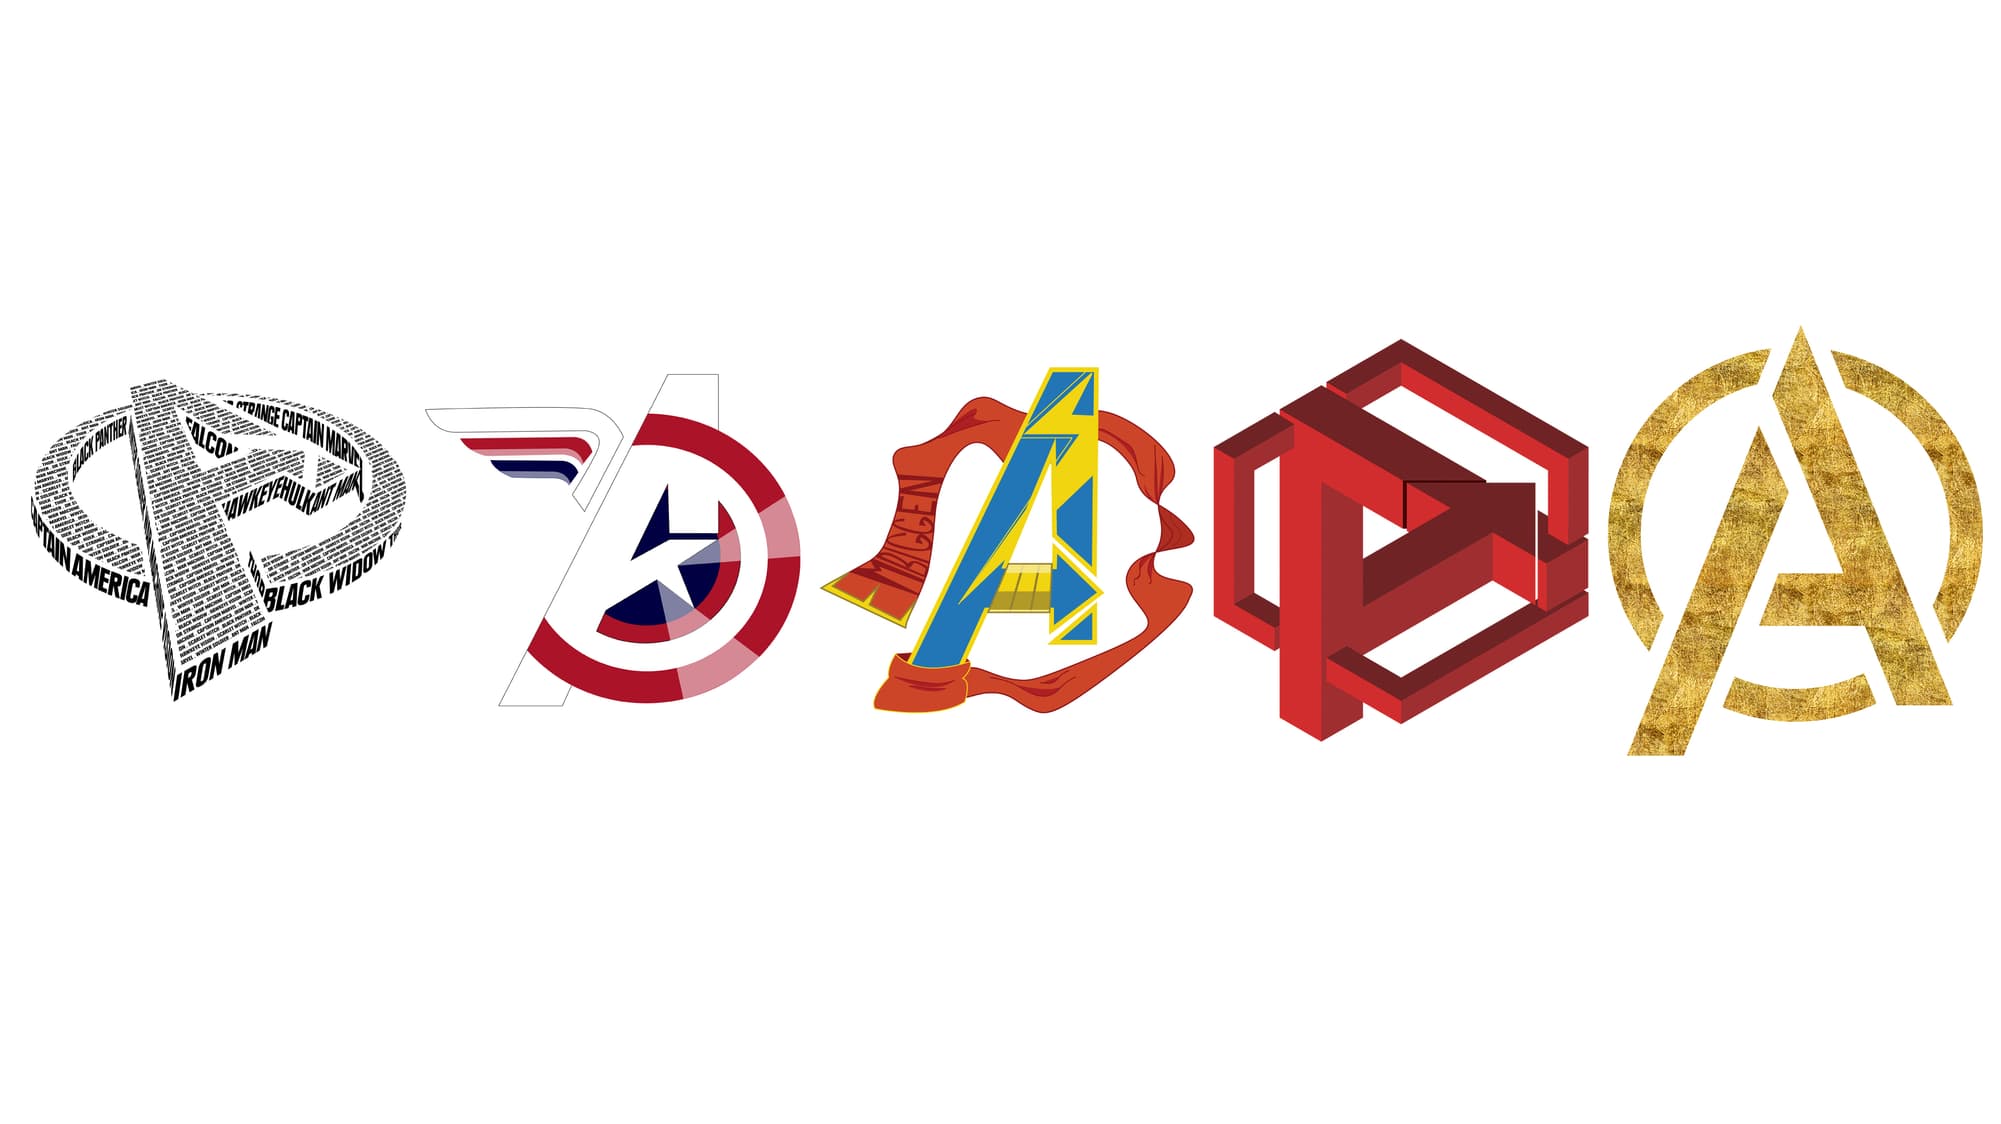 Avengers logos